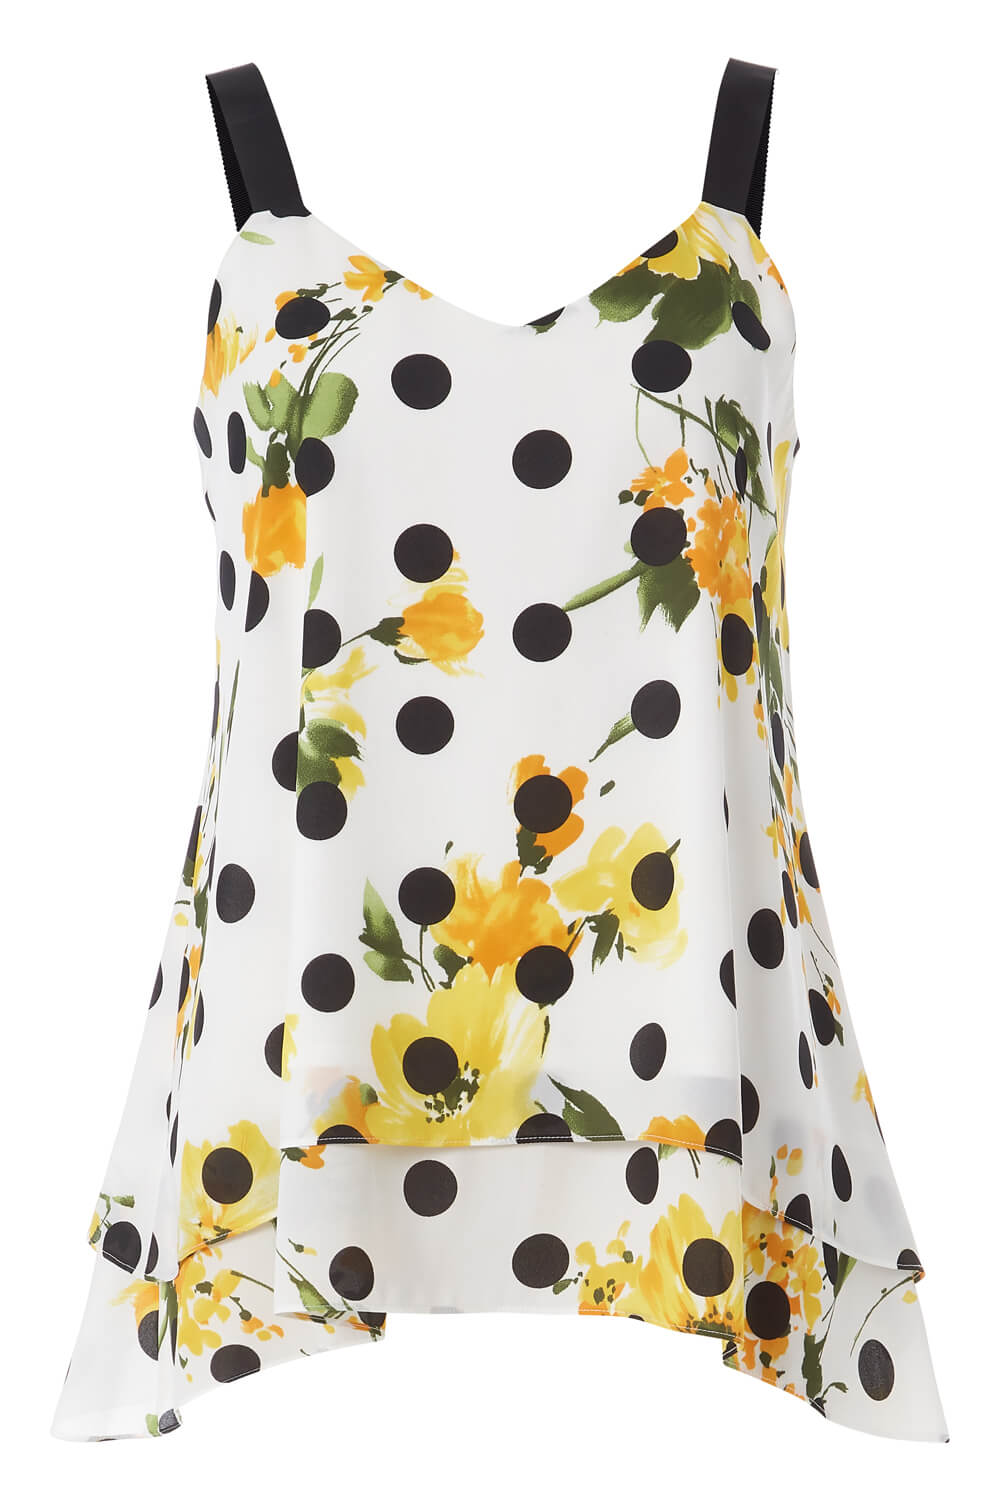 Floral Spot Print Overlay Vest Top in Yellow - Roman Originals UK